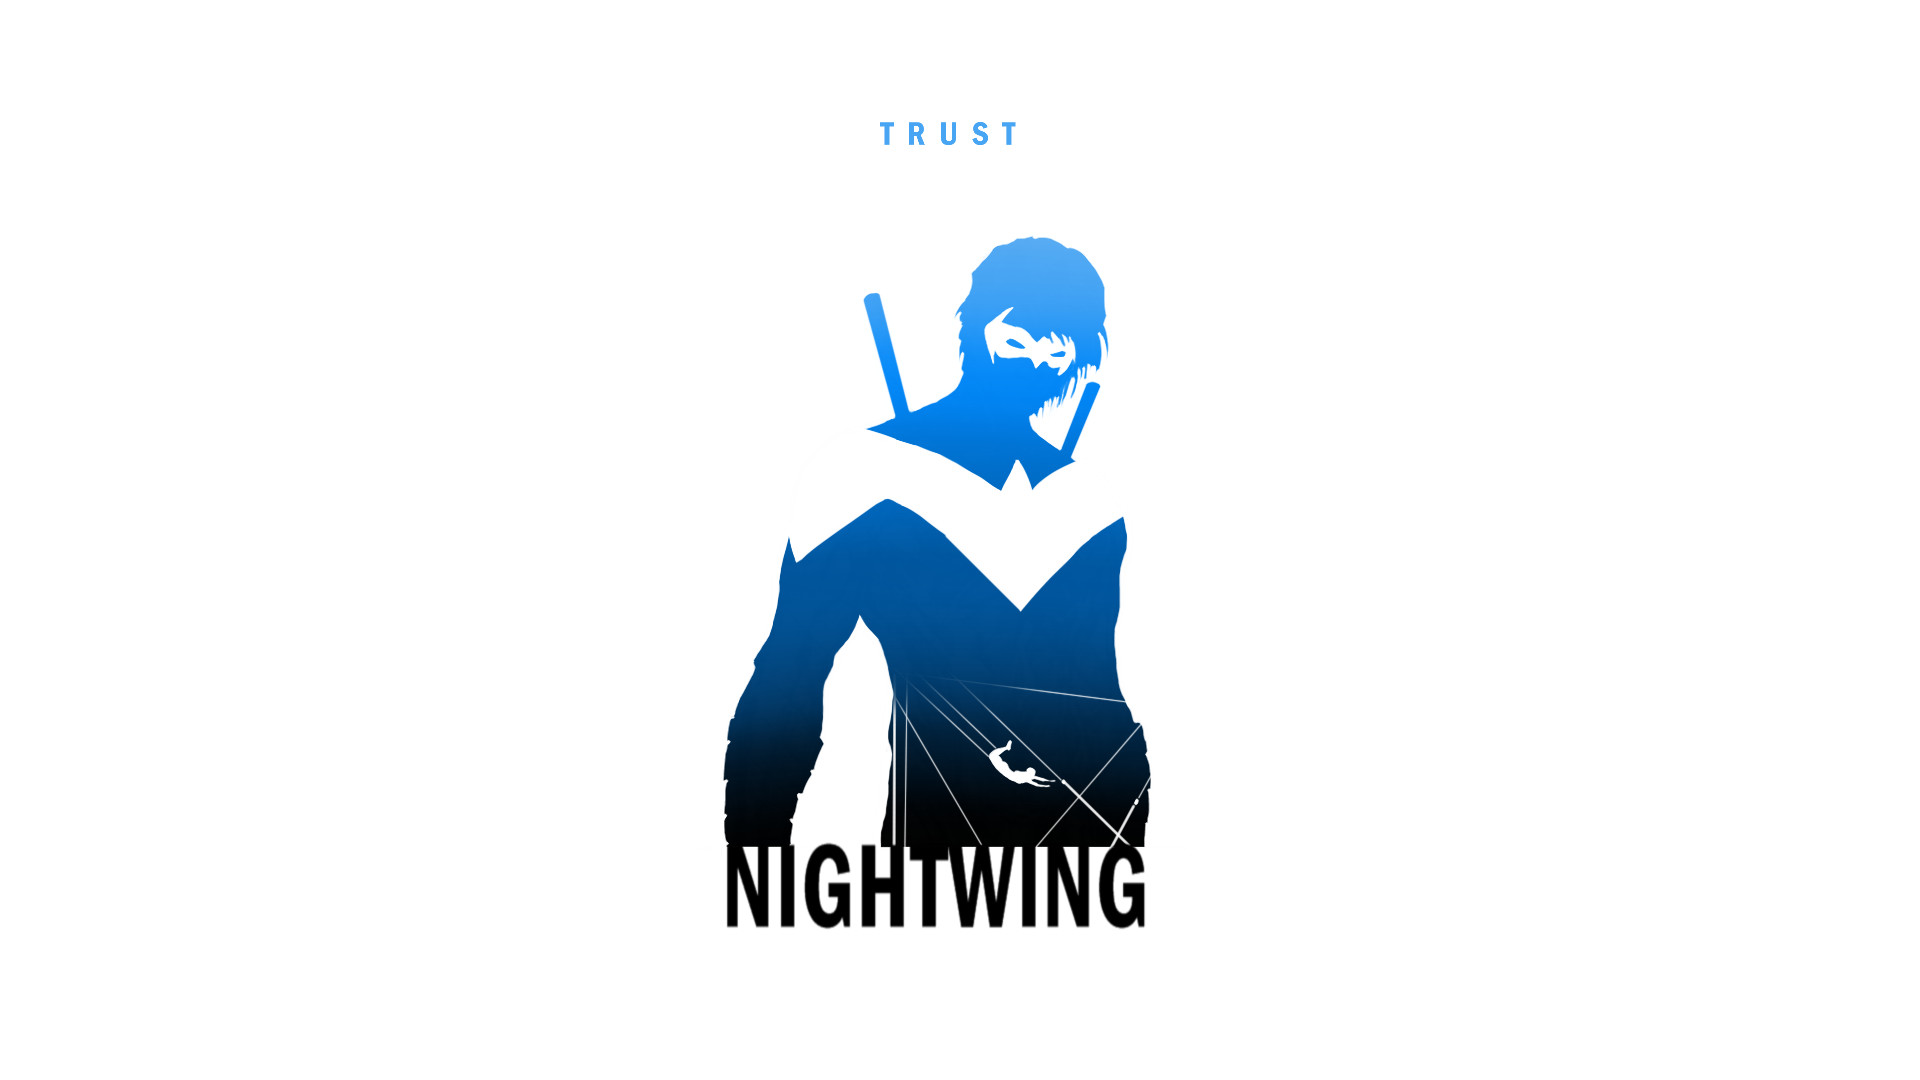 Nightwing by SteveGarciaArt